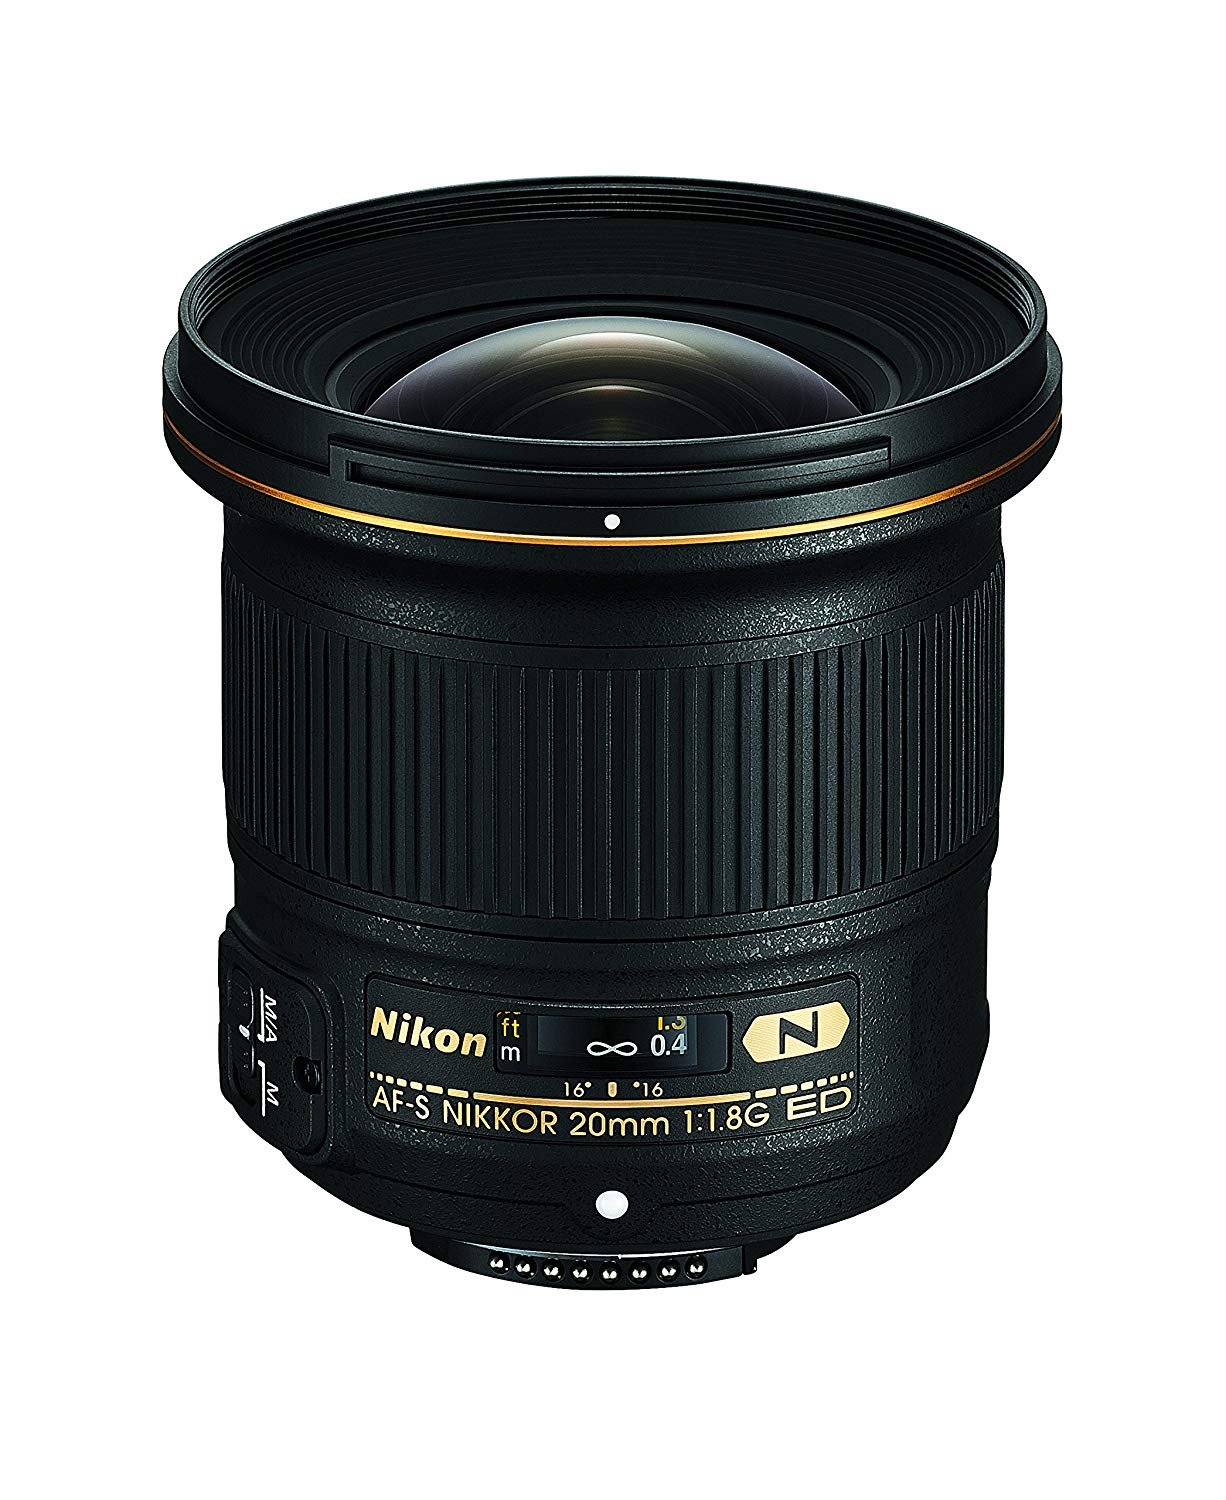 Nikon AF-S FX NIKKOR 20mm f / 1.8G ED Lente fija con en...